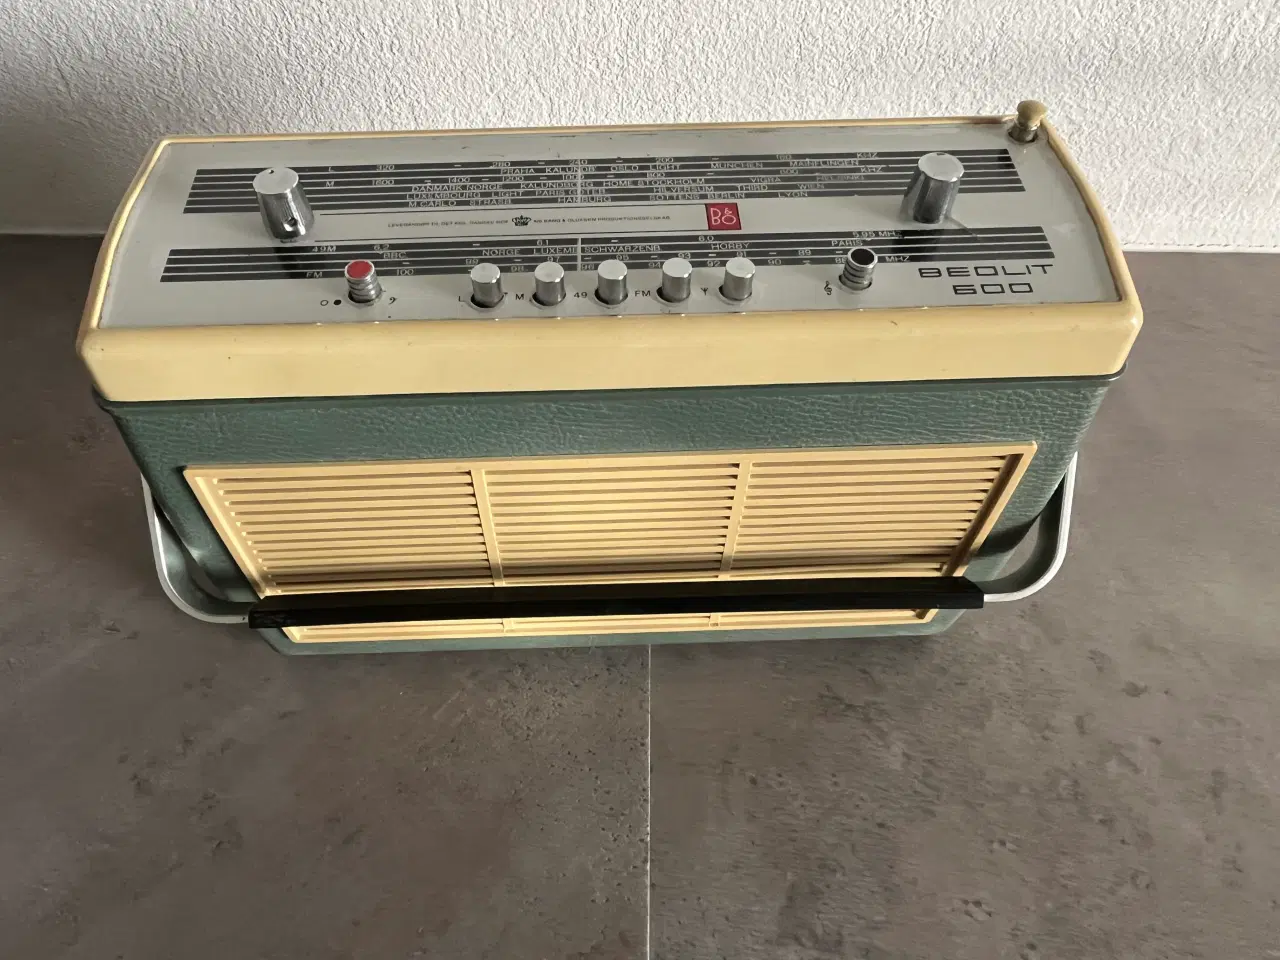 Billede 5 - Beolit 600 transistor radio sælges.